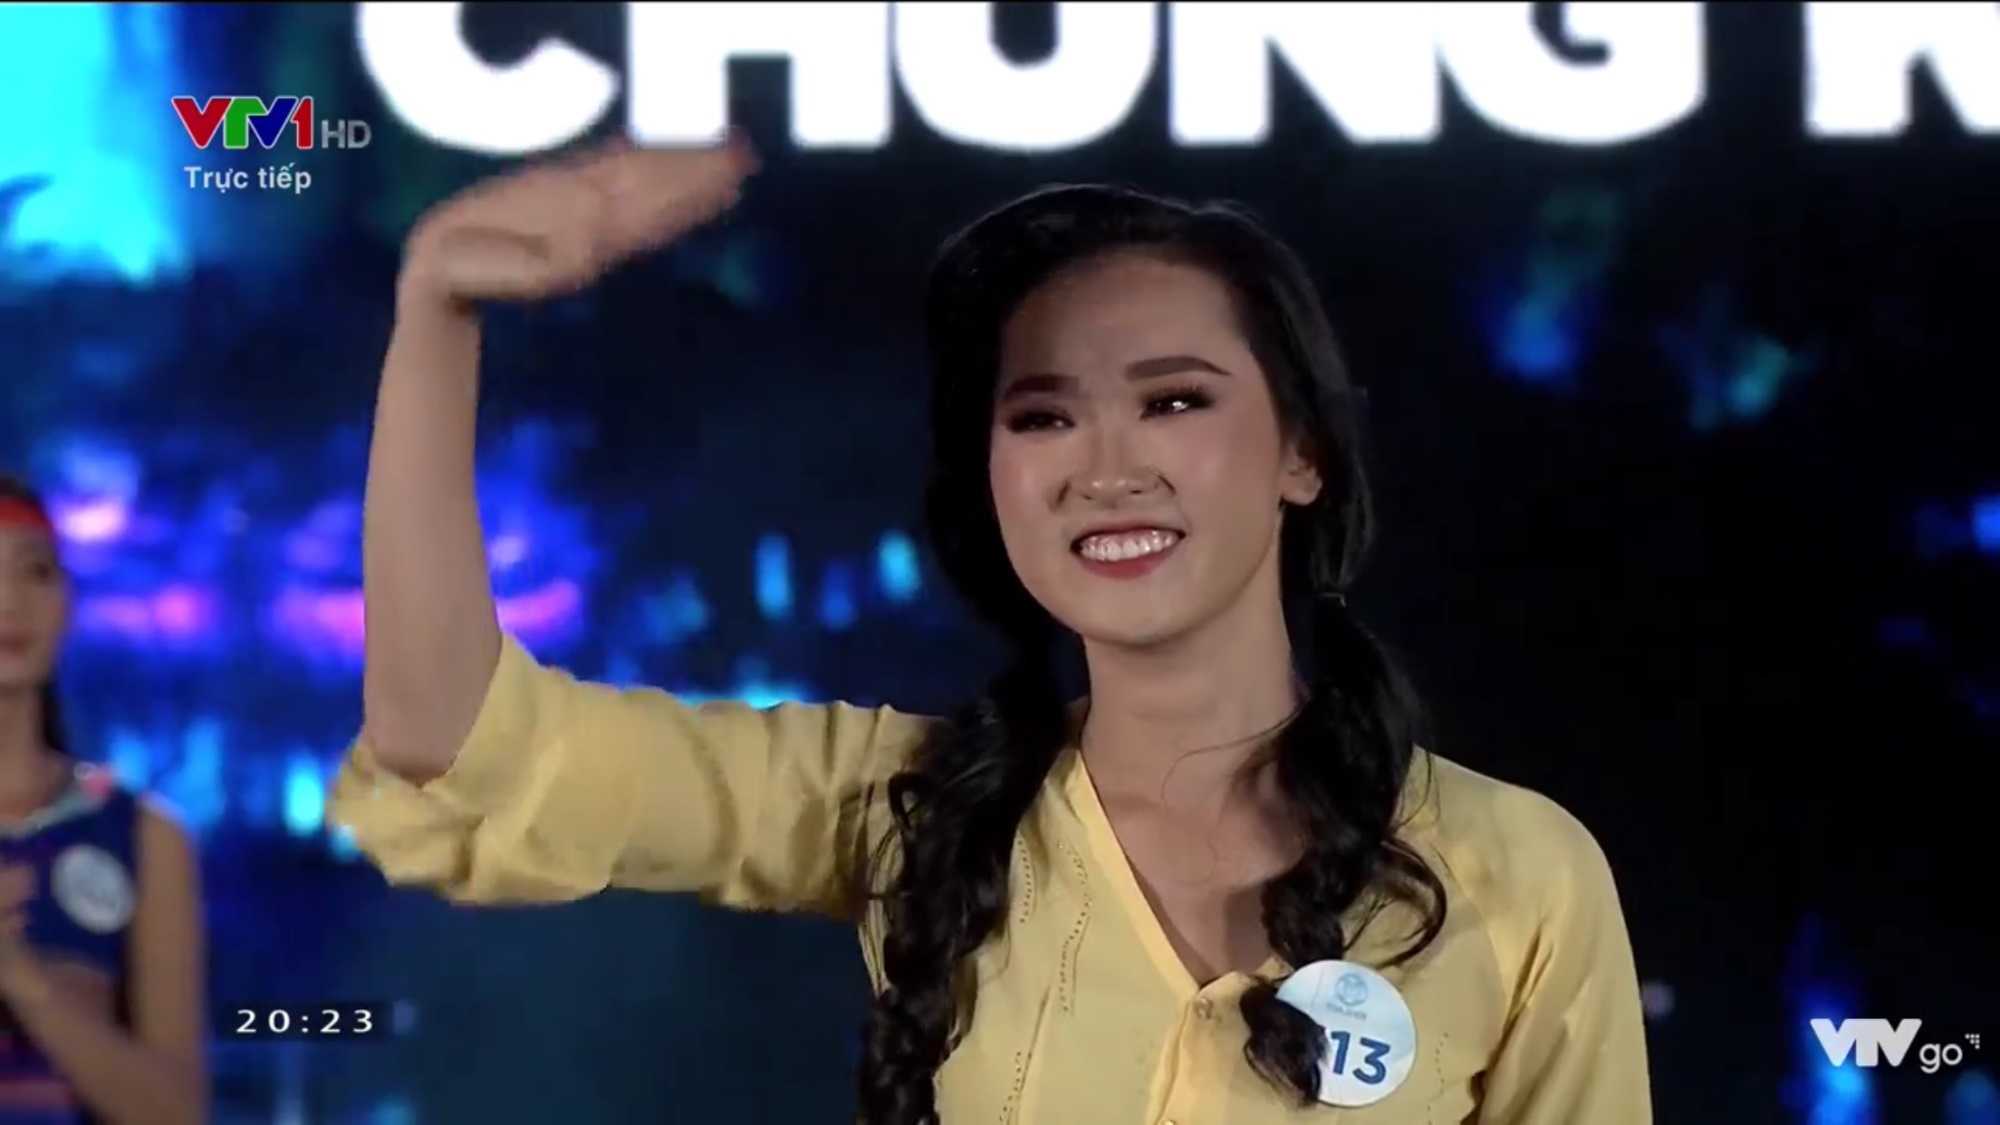 Lương Thùy Linh đăng quang Hoa hậu Thế giới Việt Nam - Miss World Việt Nam 2019 - Ảnh 1